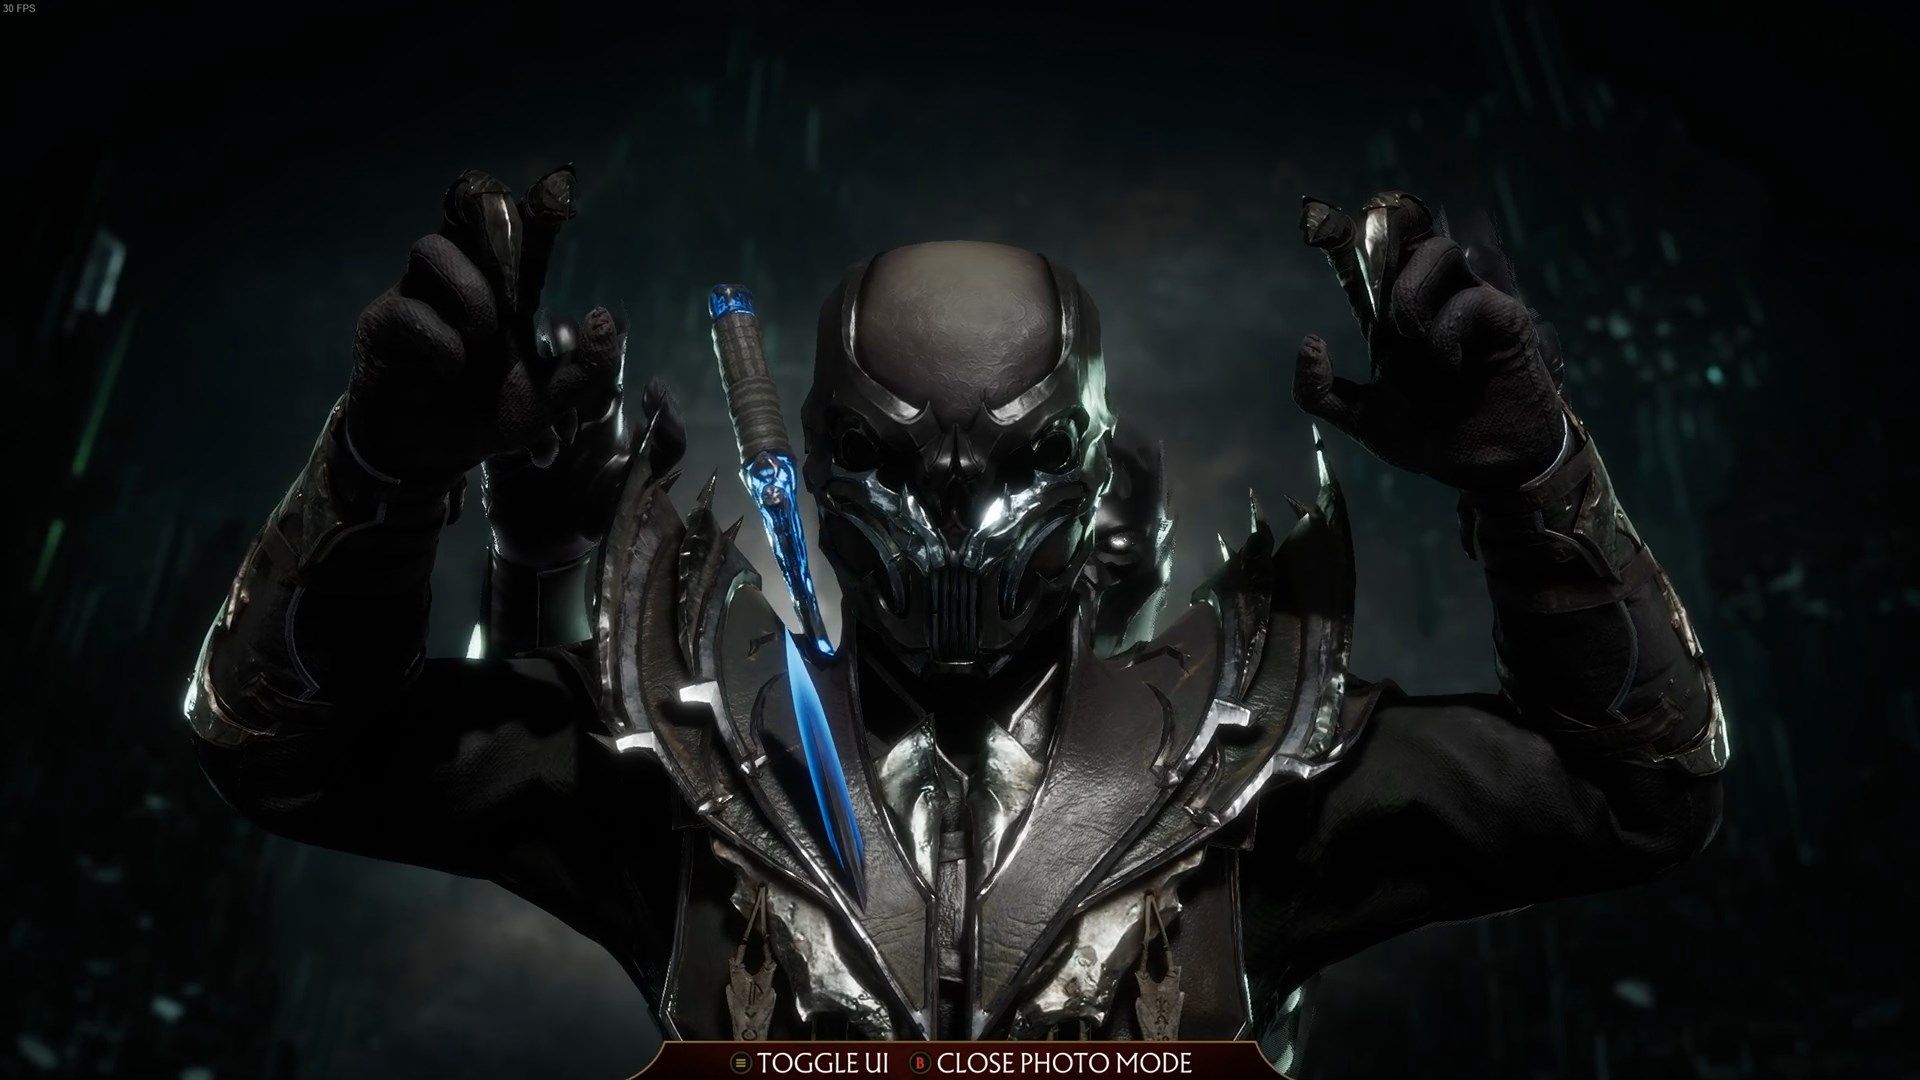 Wallpaper night mask art Mortal Kombat shuriken throw Noob Saibot  images for desktop section игры  download